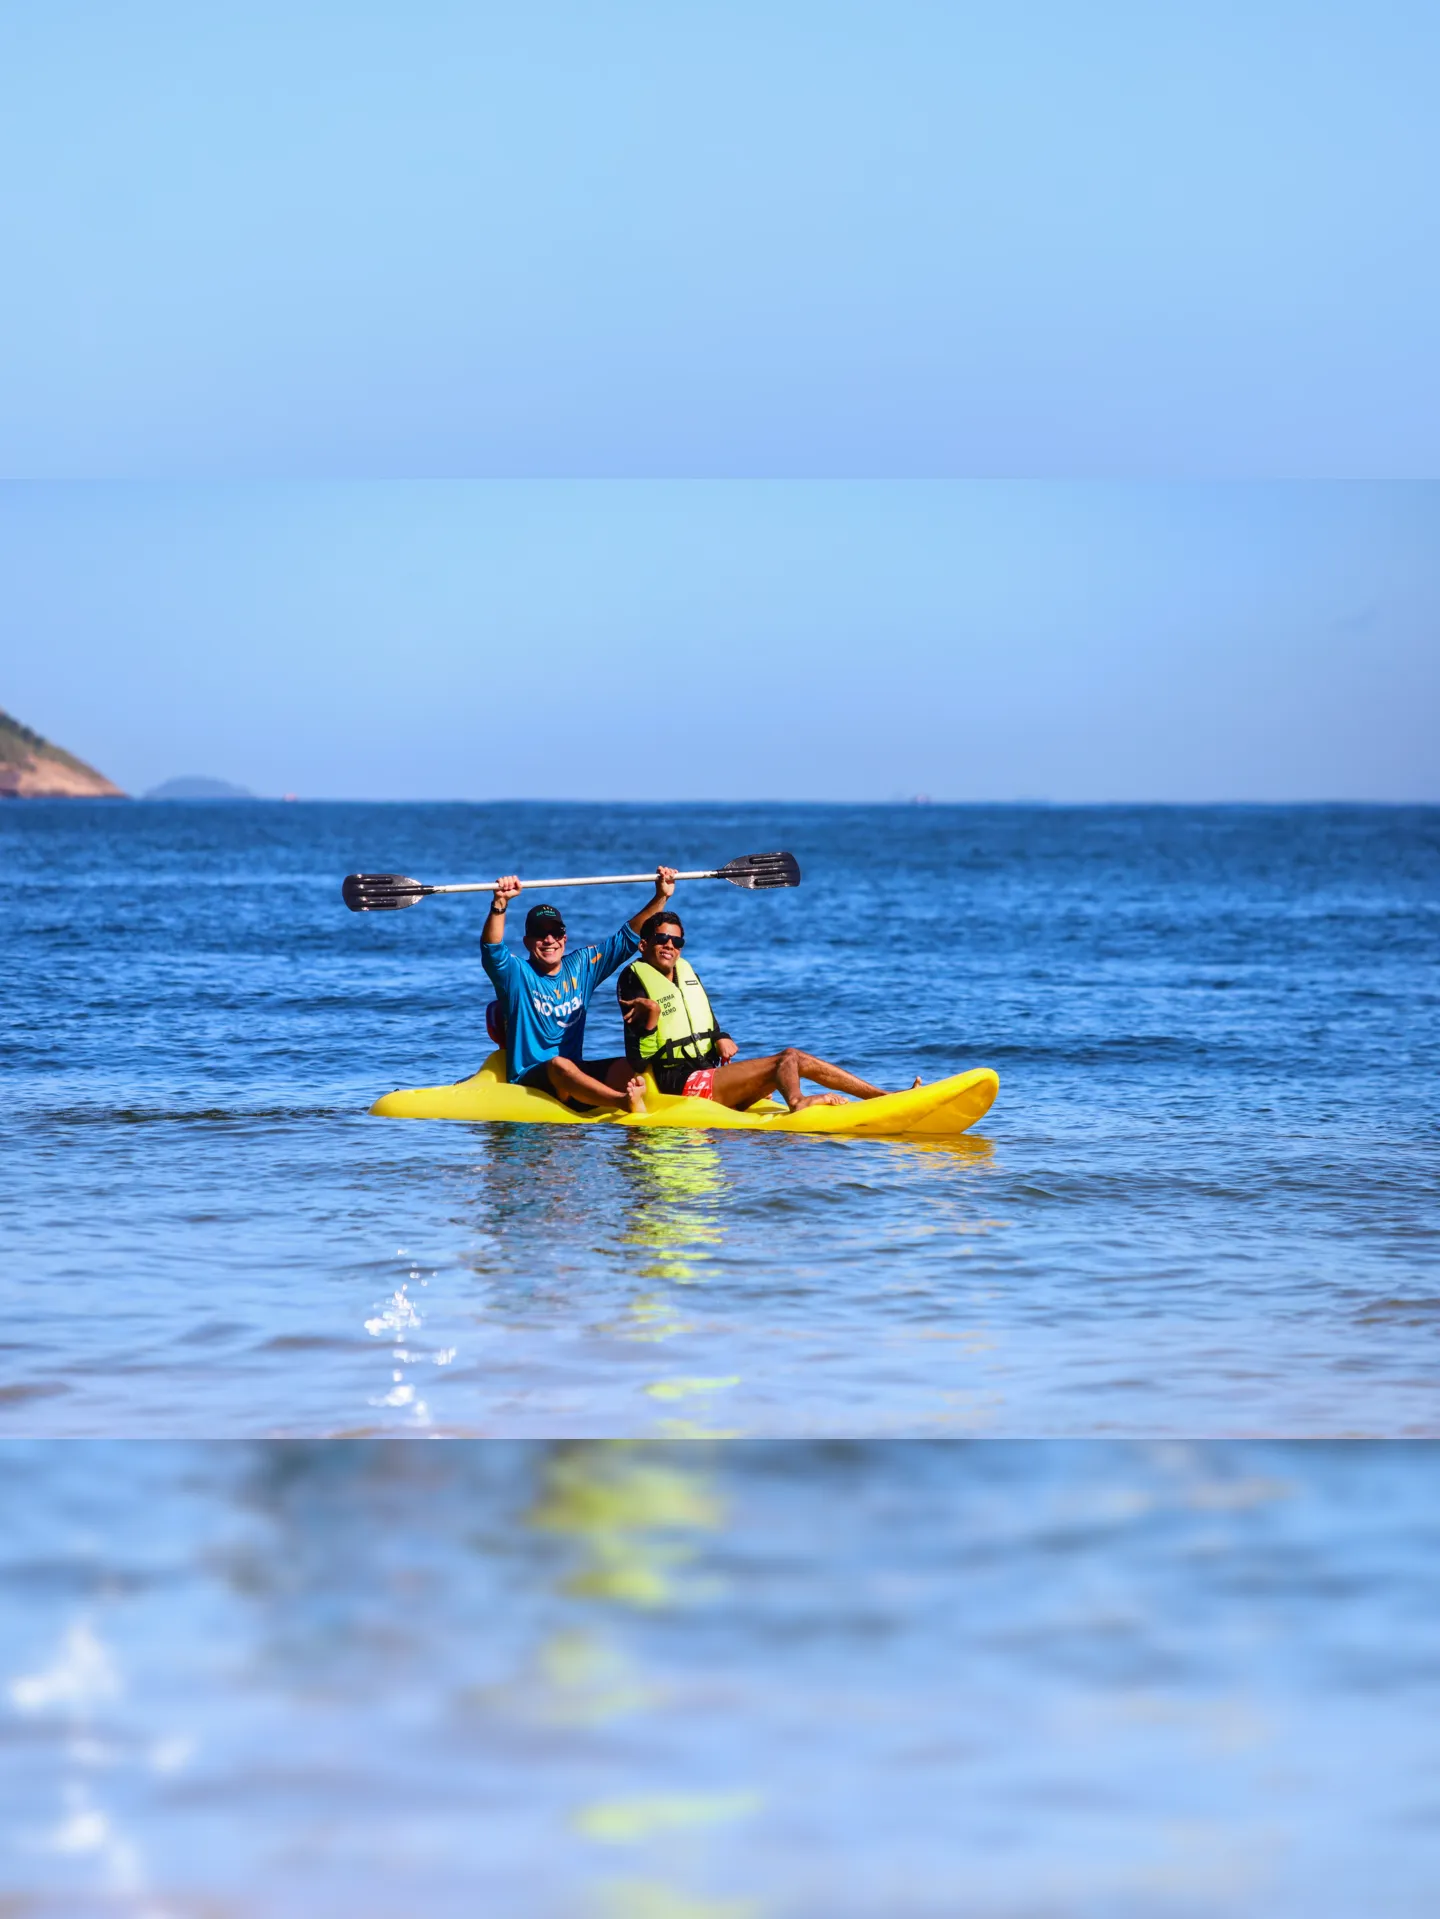 Projeto Ao Mar Niterói levou pessoas com deficiência a praticar esportes ao ar livre